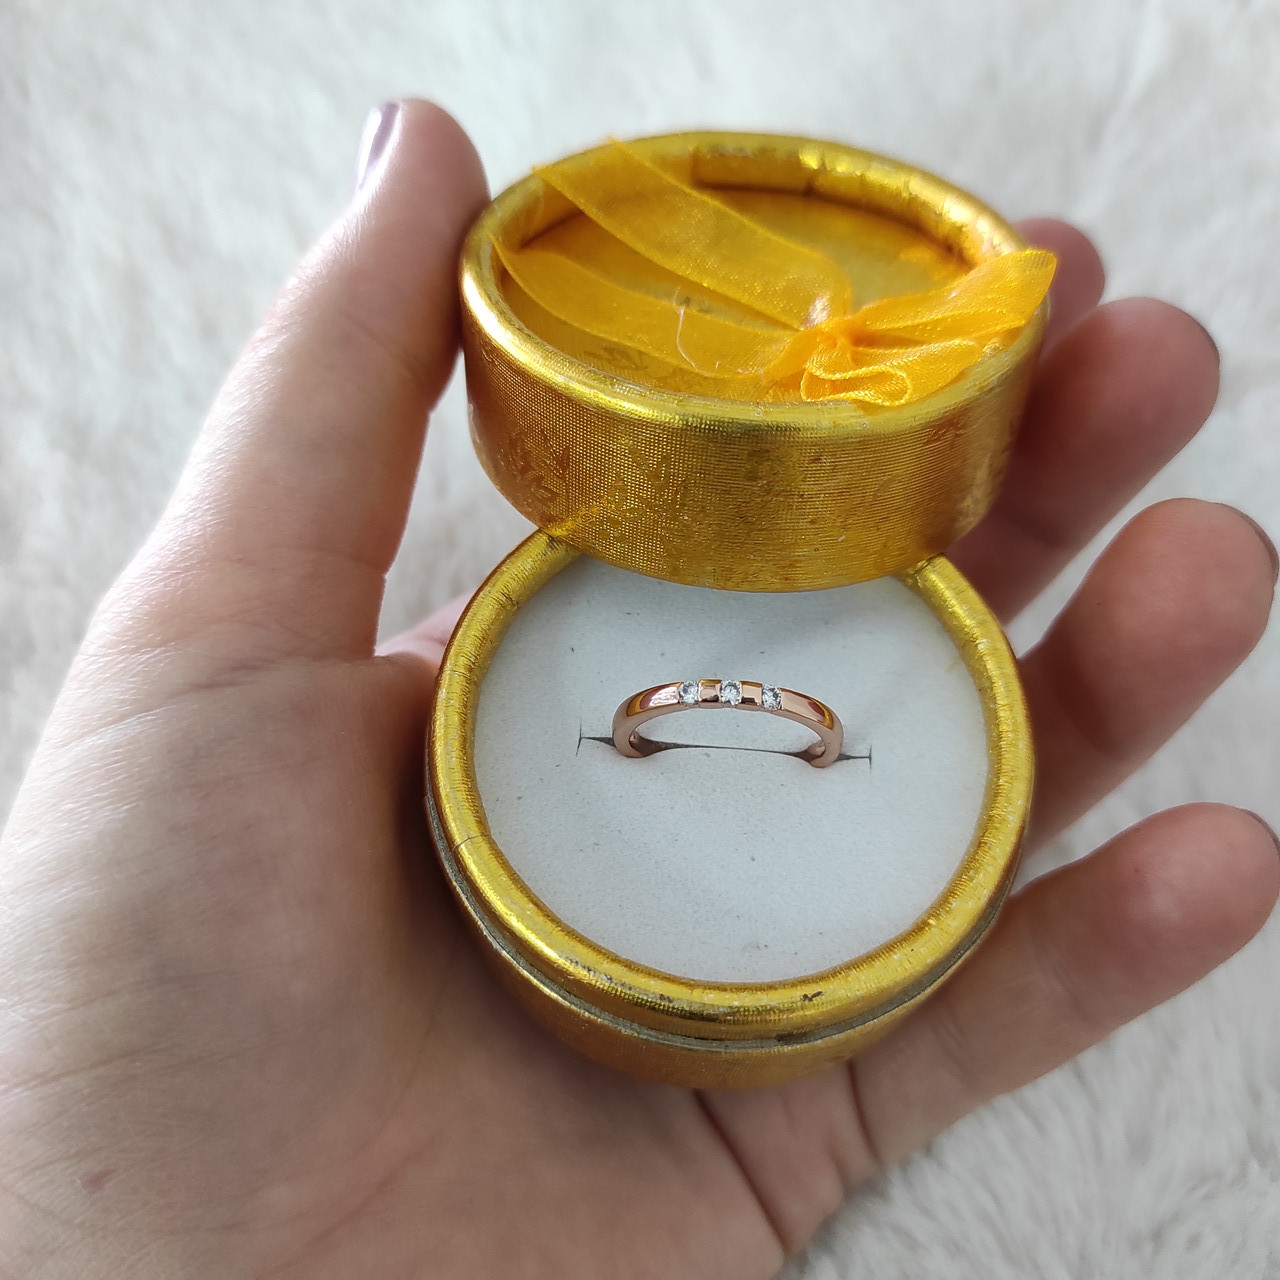 Вузька каблучка з медзолота "Золота делікатність" маленькі розміри  - солідний подарунок у футлярі для дівчини